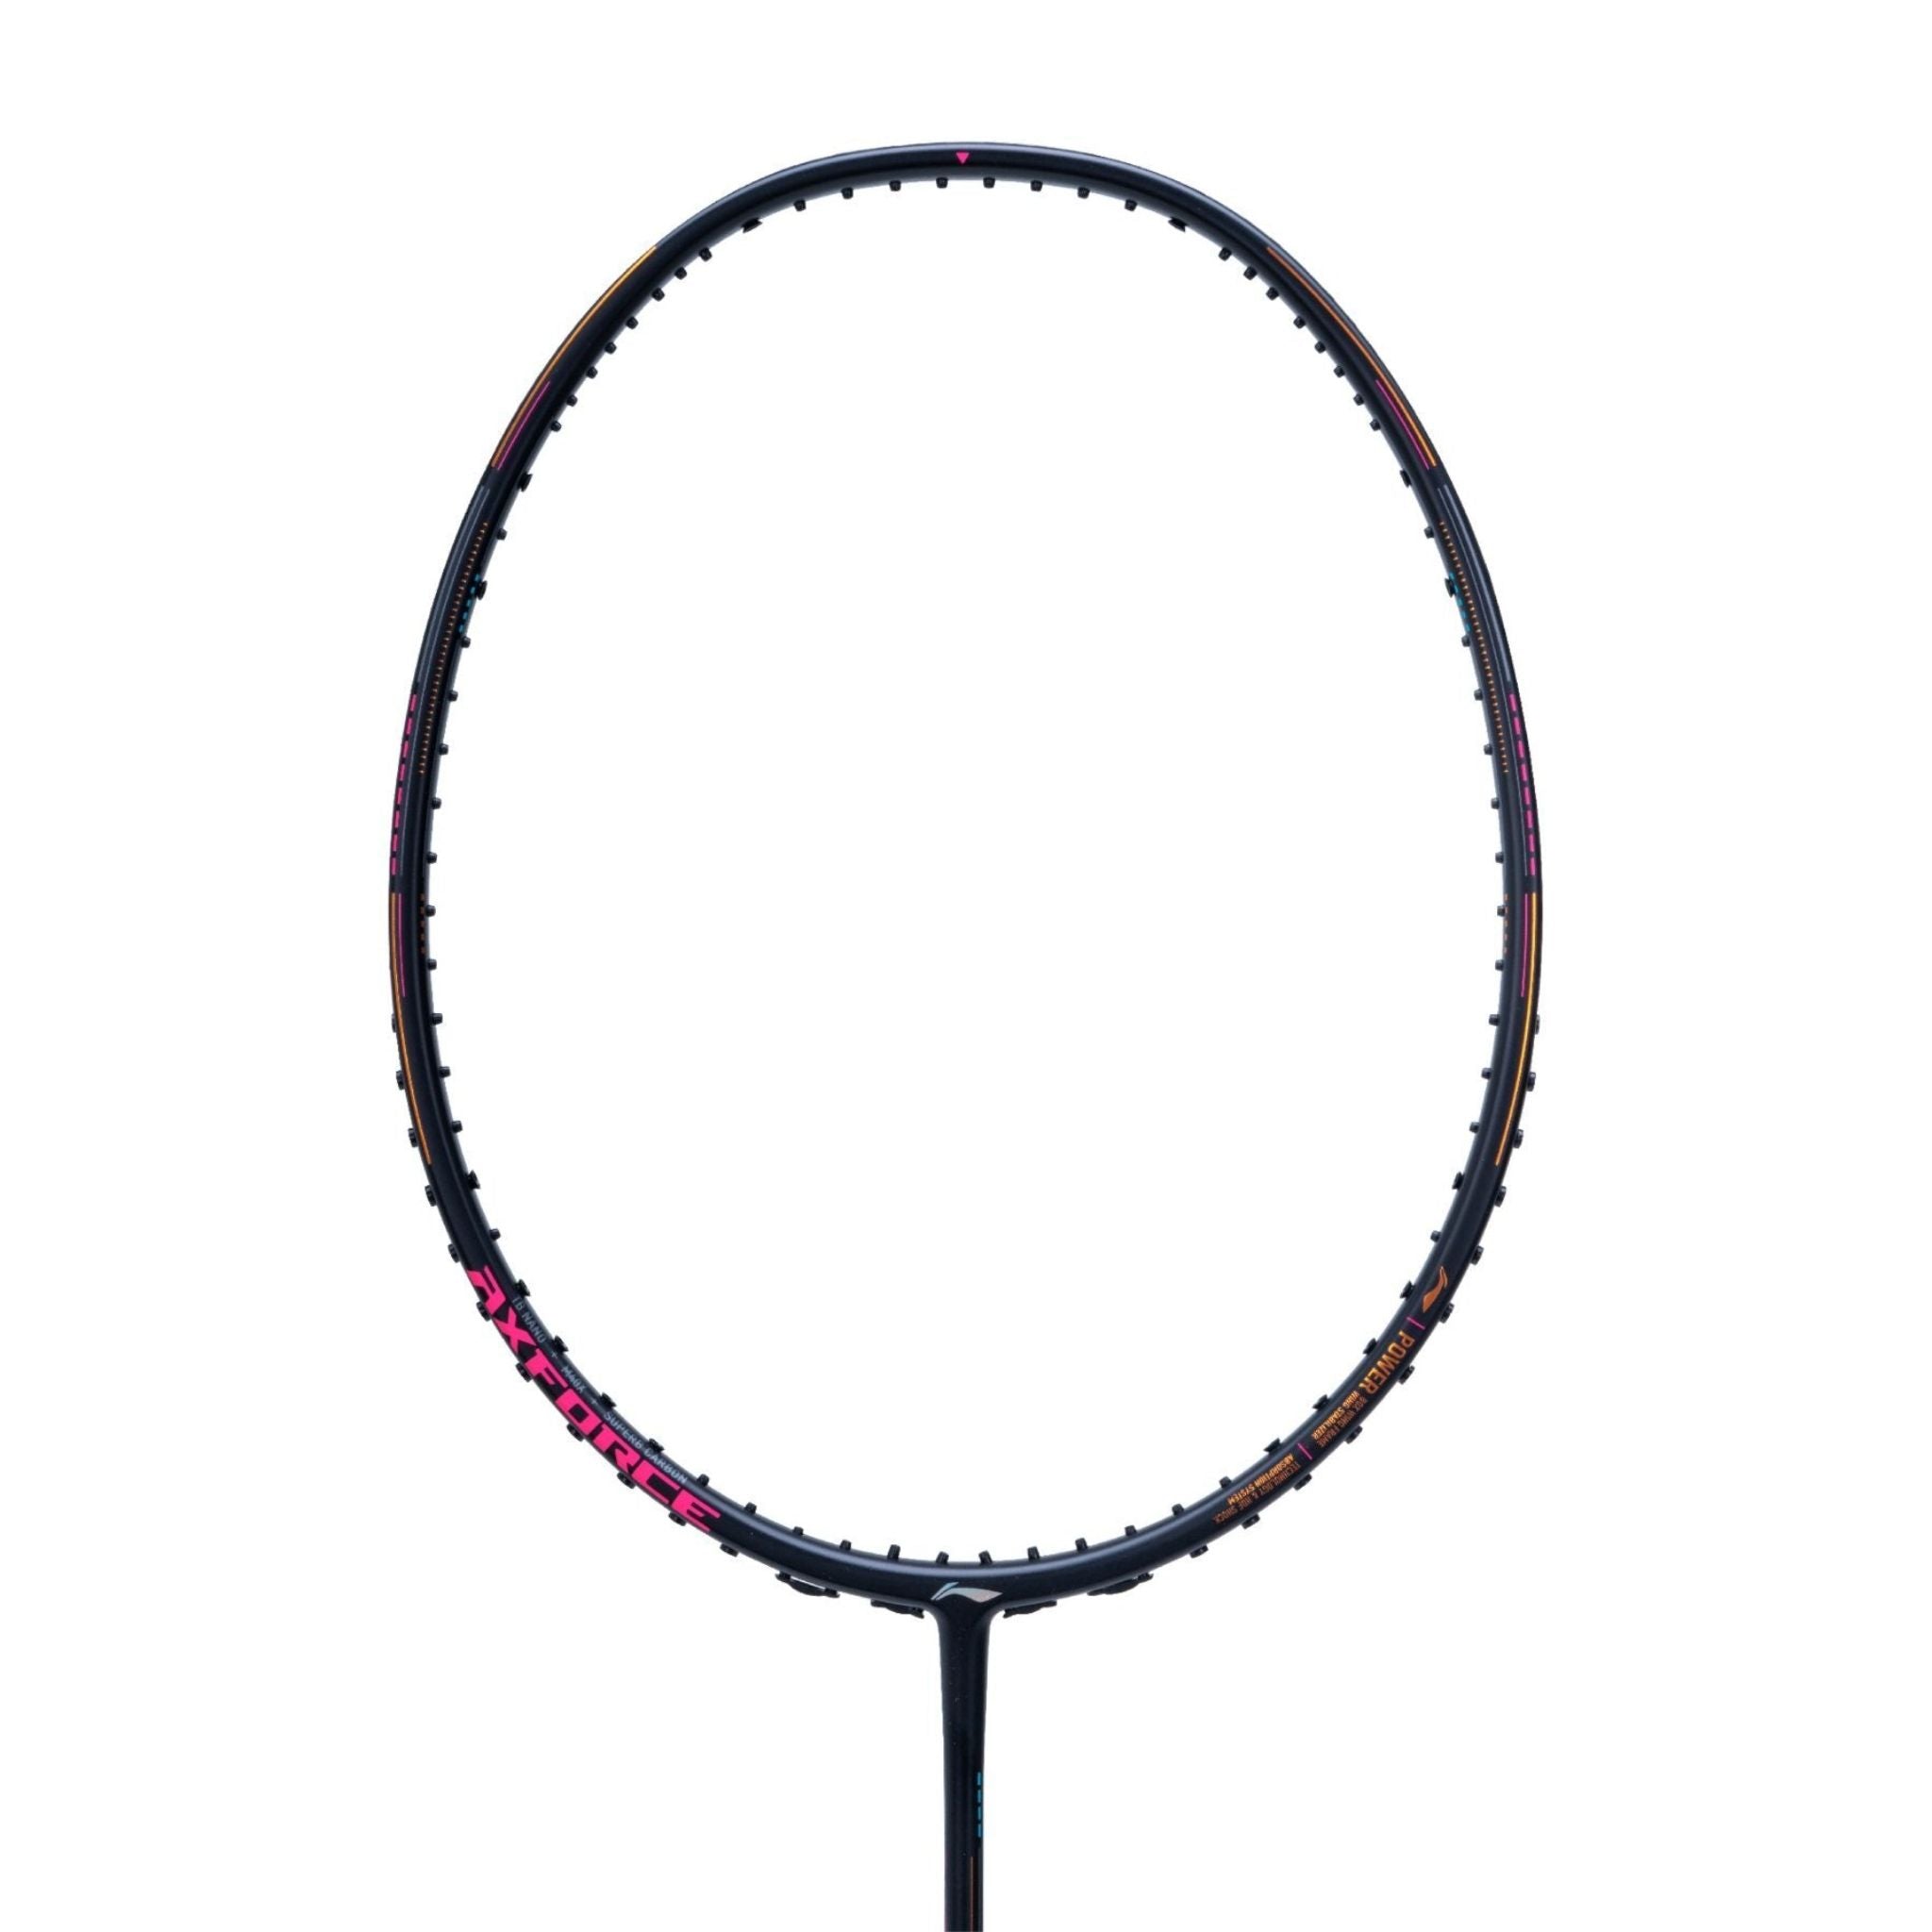 LI-NING AXFORCE 80 4U Badminton Racket